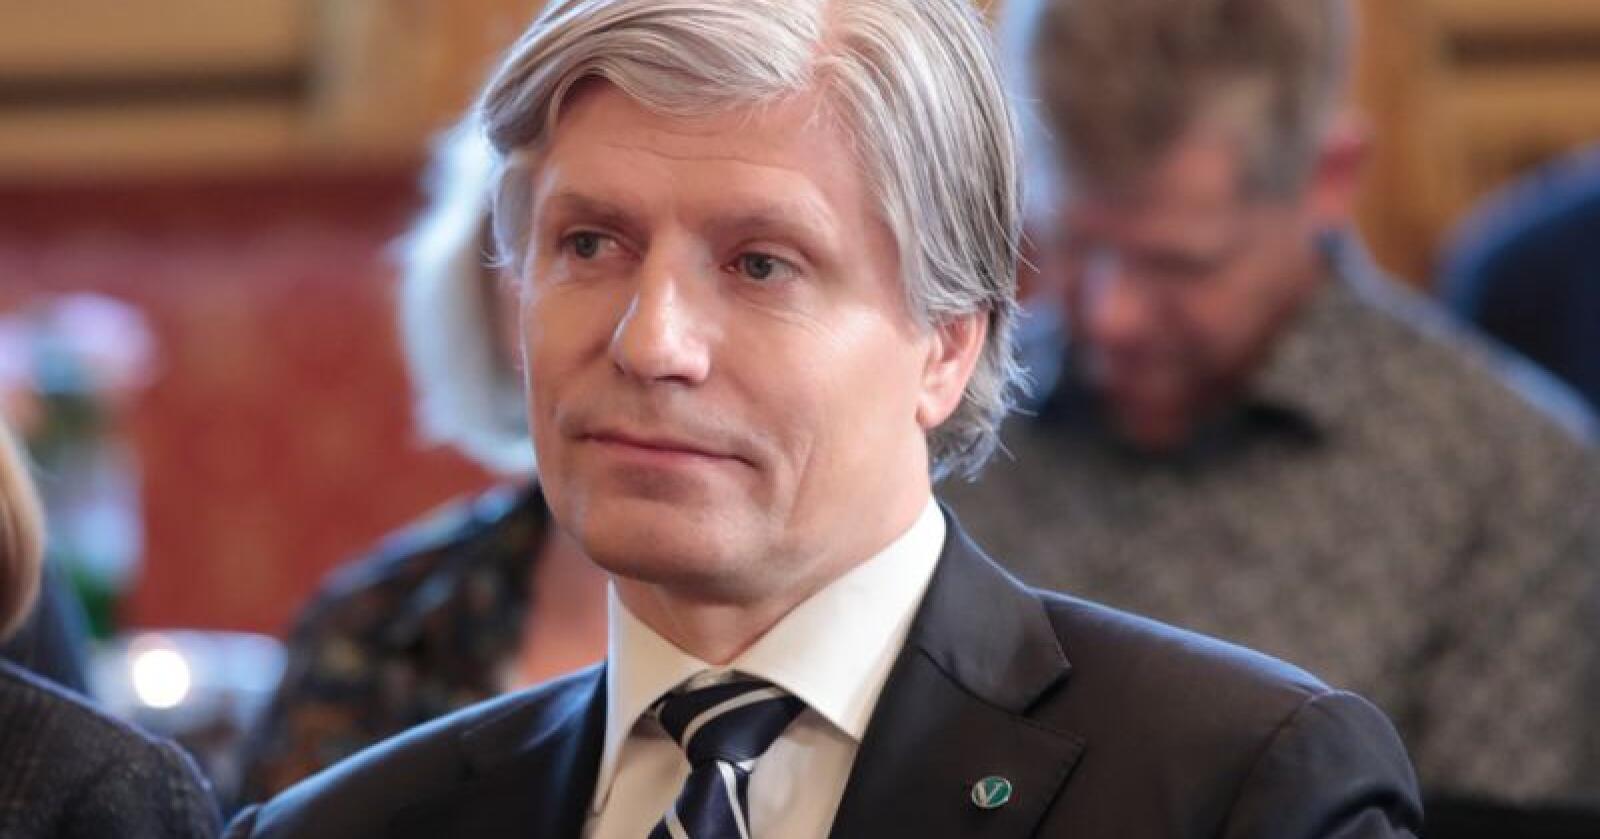 Regjeringen, ved klima- og miljøminister Ola Elvestuen, ønsker mer kunnskap om ulv. Foto: Lise Åserud / NTB scanpix